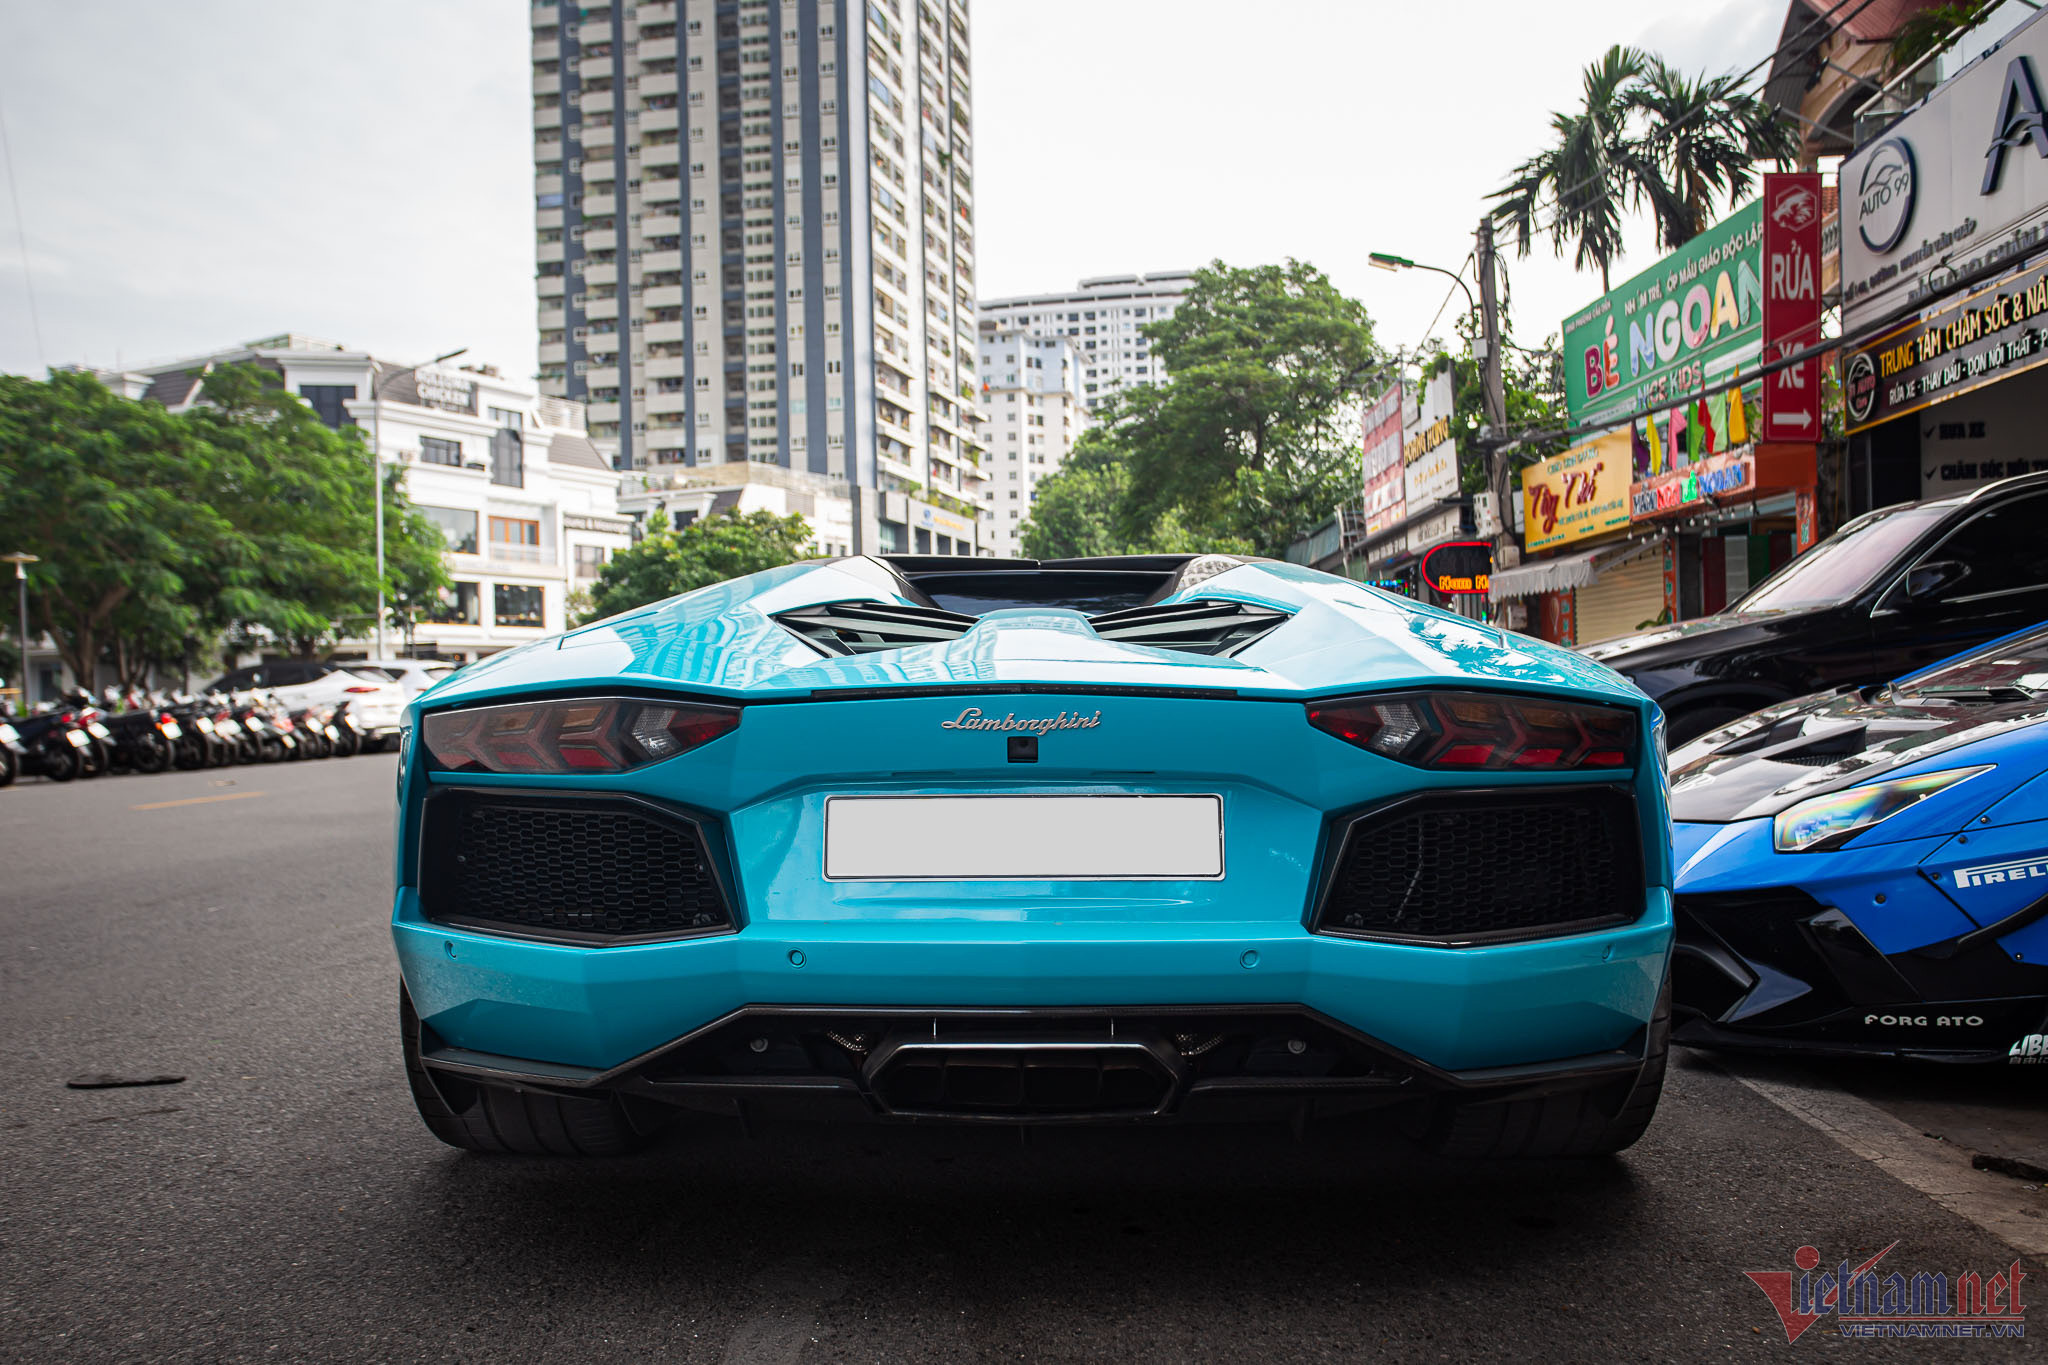 Siêu xe Lamborghini Aventador một thời của dân chơi Đắk Lắk bán giá gần 20 tỷ